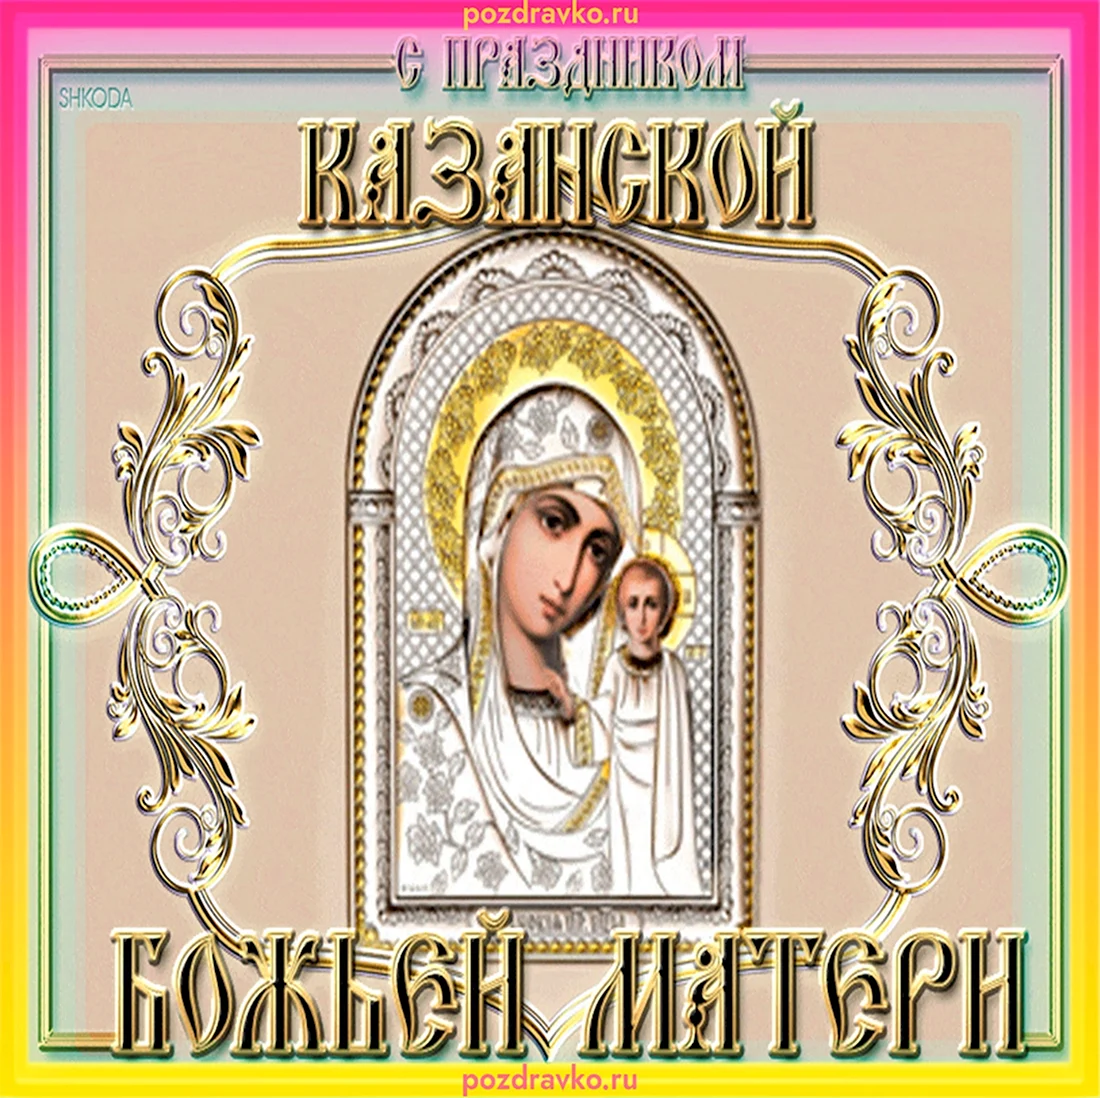 Казанская икона Божией 2021. Открытка, картинка с поздравлением, с праздником